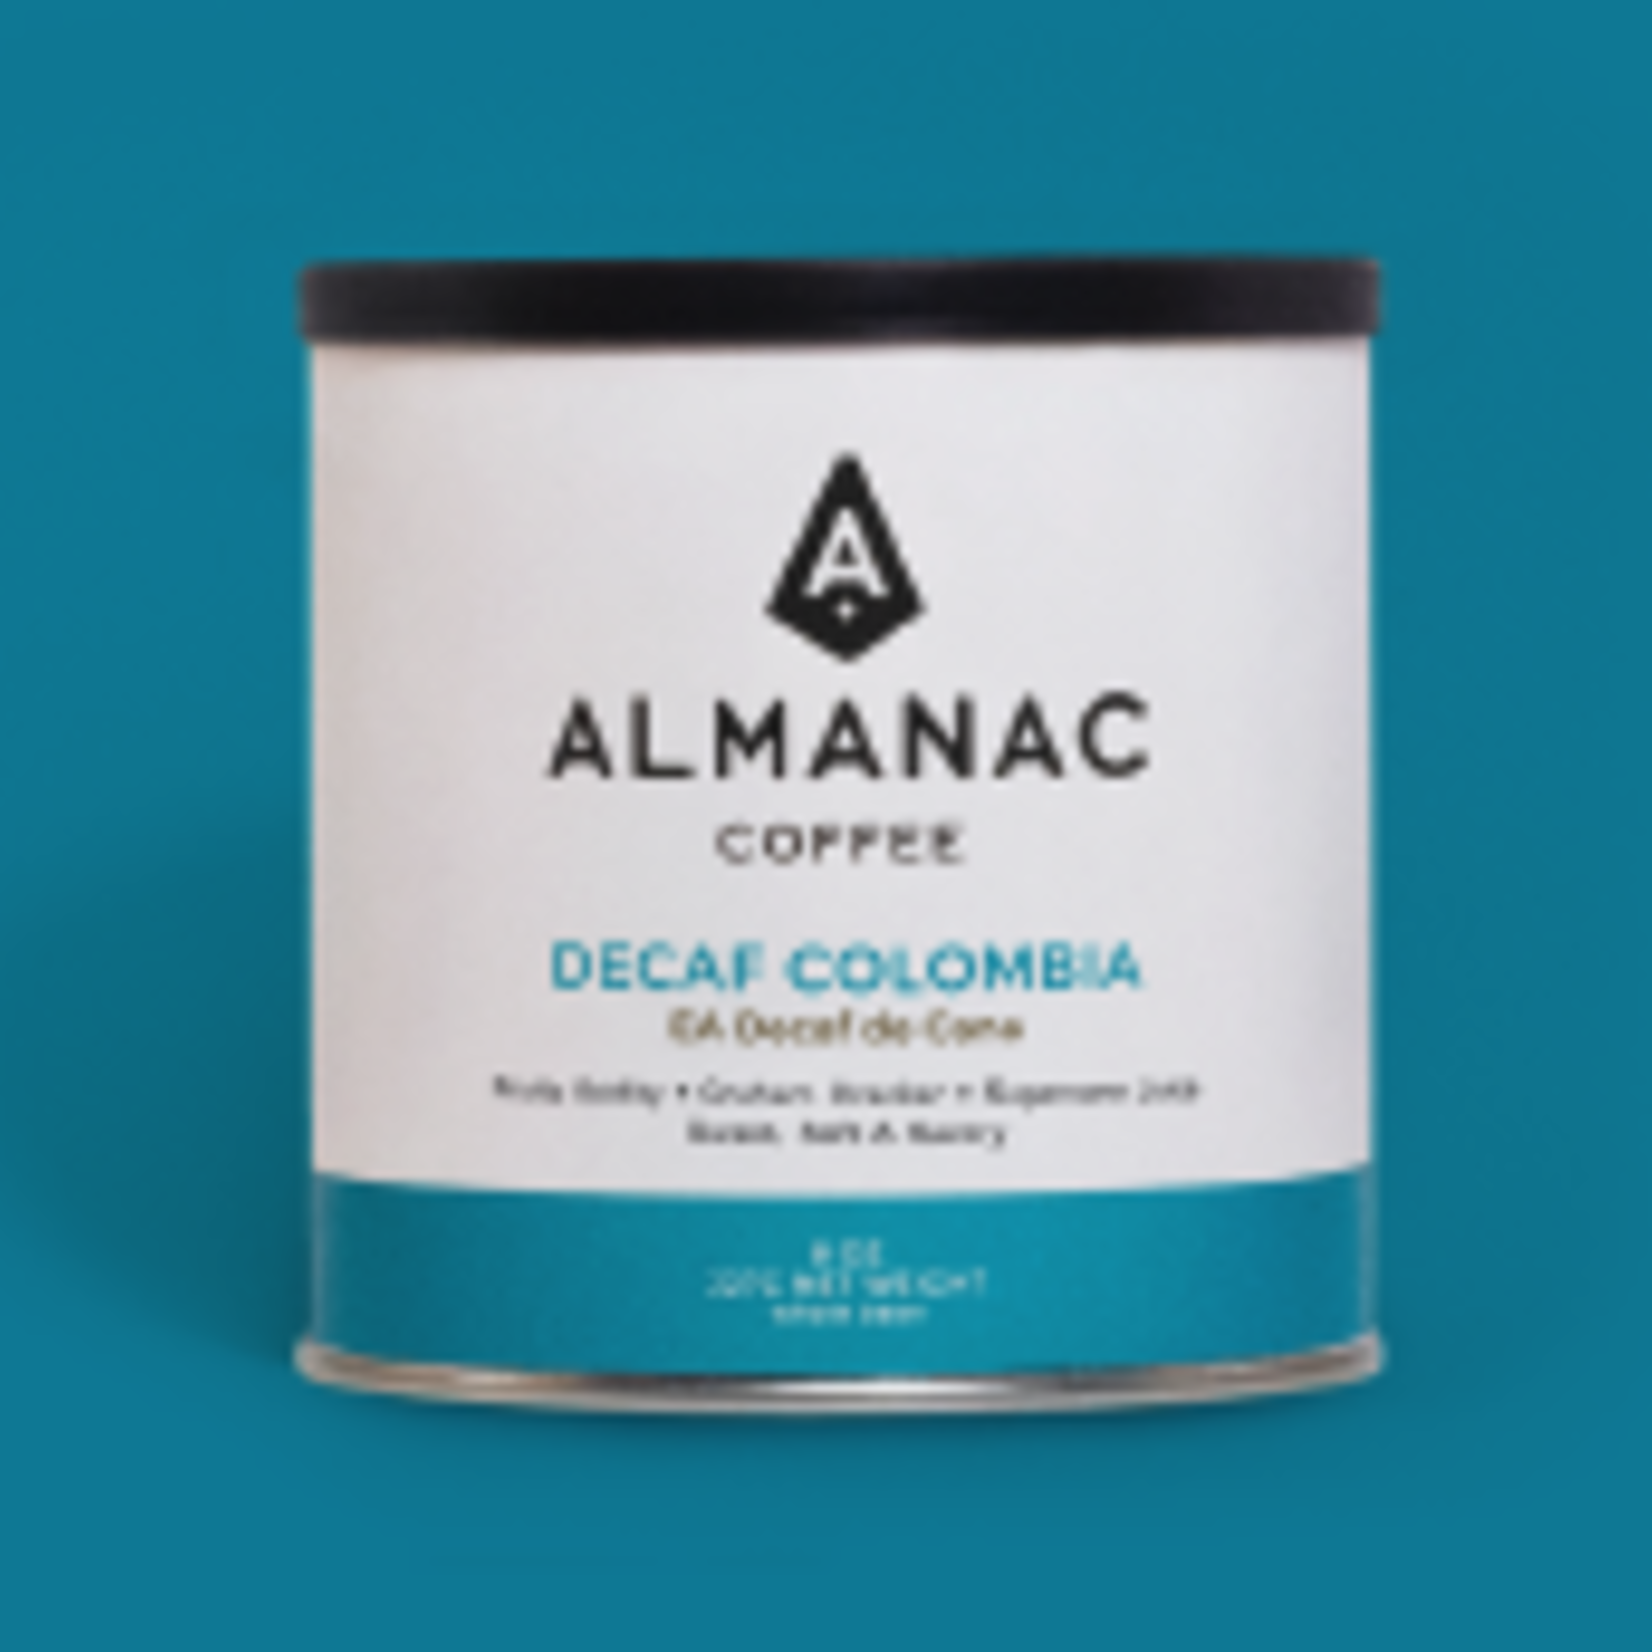 Almanac Coffee Decaf Colombia Huila, Almanac Coffee - Medium/Dark